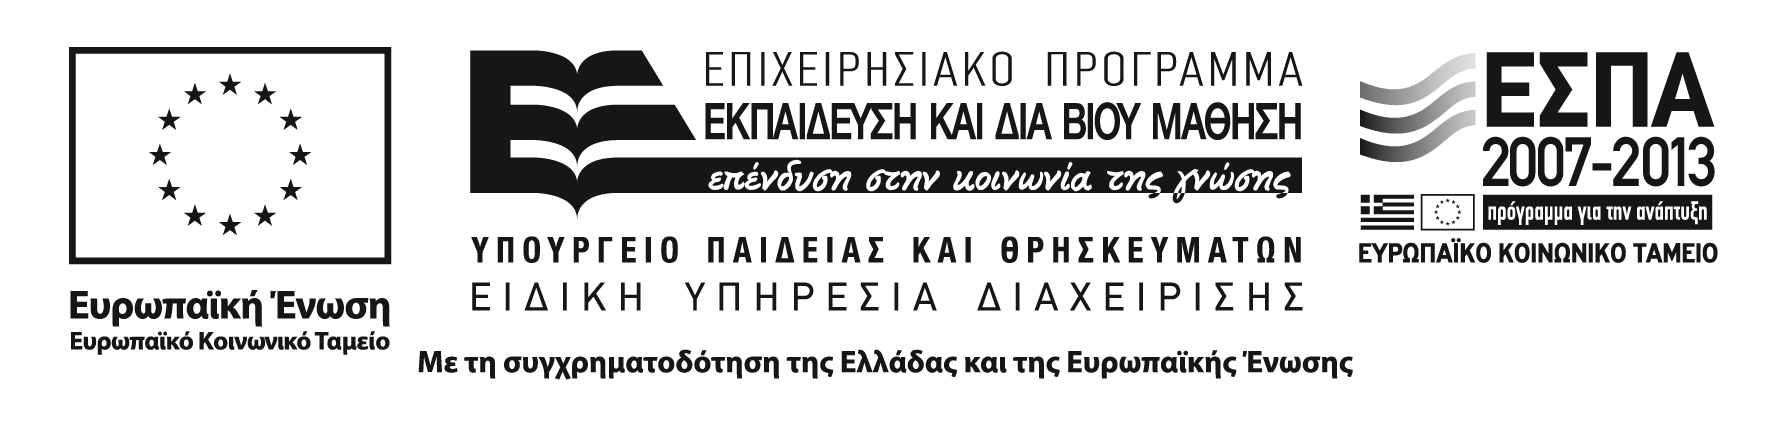 Το έργο υλοποιείται στο πλαίσιο του υποέργου 2 με τίτλο «Ανάπτυξη έντυπου εκπαιδευτικού υλικού για τα νέα Προγράμματα Σπουδών» της Πράξης «Ελληνικό Ανοικτό Πανεπιστήμιο», η οποία έχει ενταχθεί στο